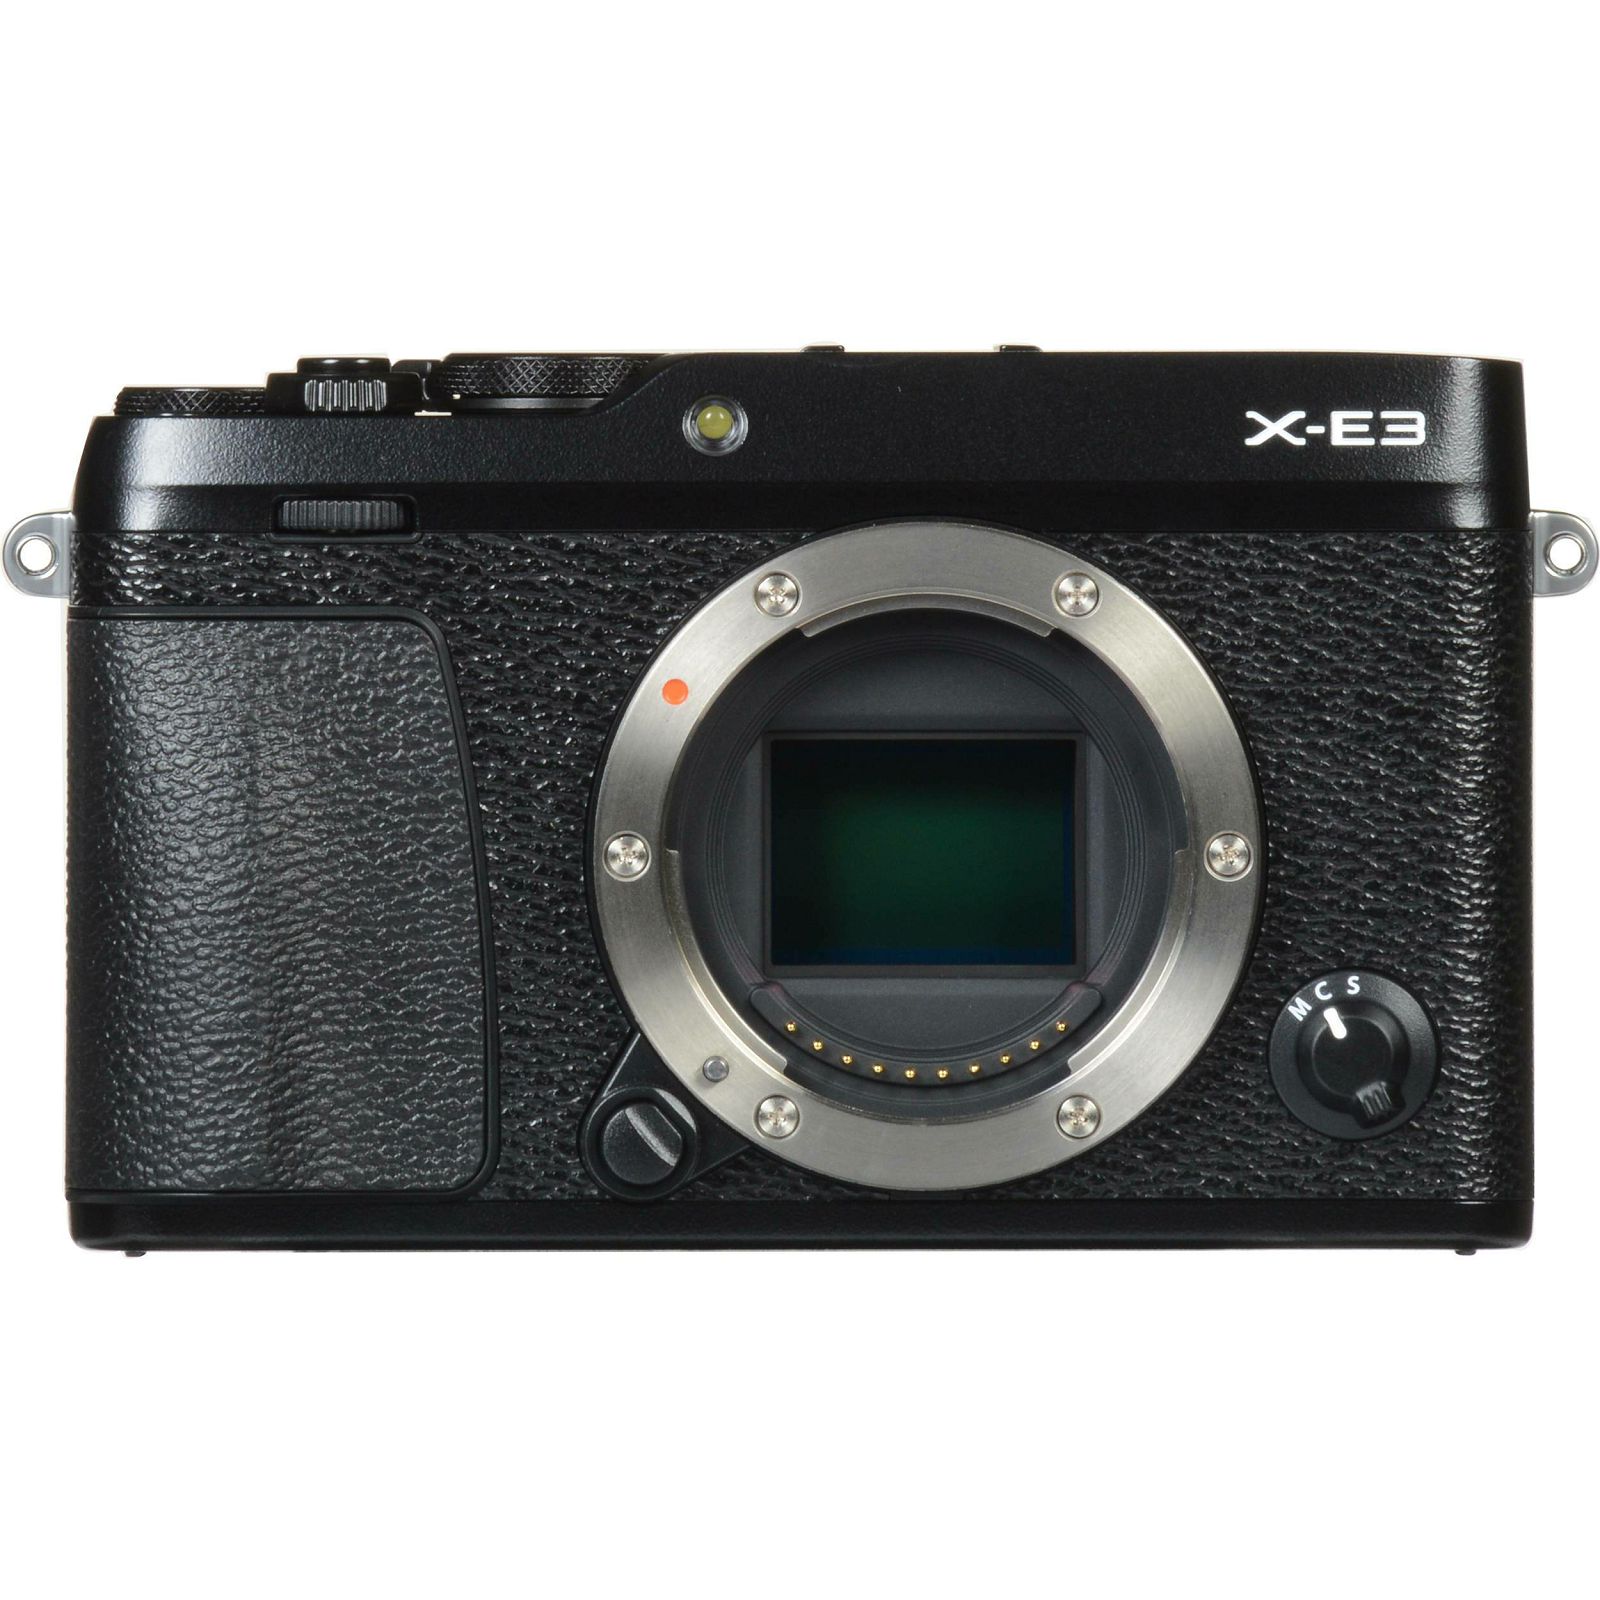 Fujifilm X-E3 Body Black crni Digitalni fotoaparat tijelo Mirrorless camera Fuji Finepix XE3 24Mpx